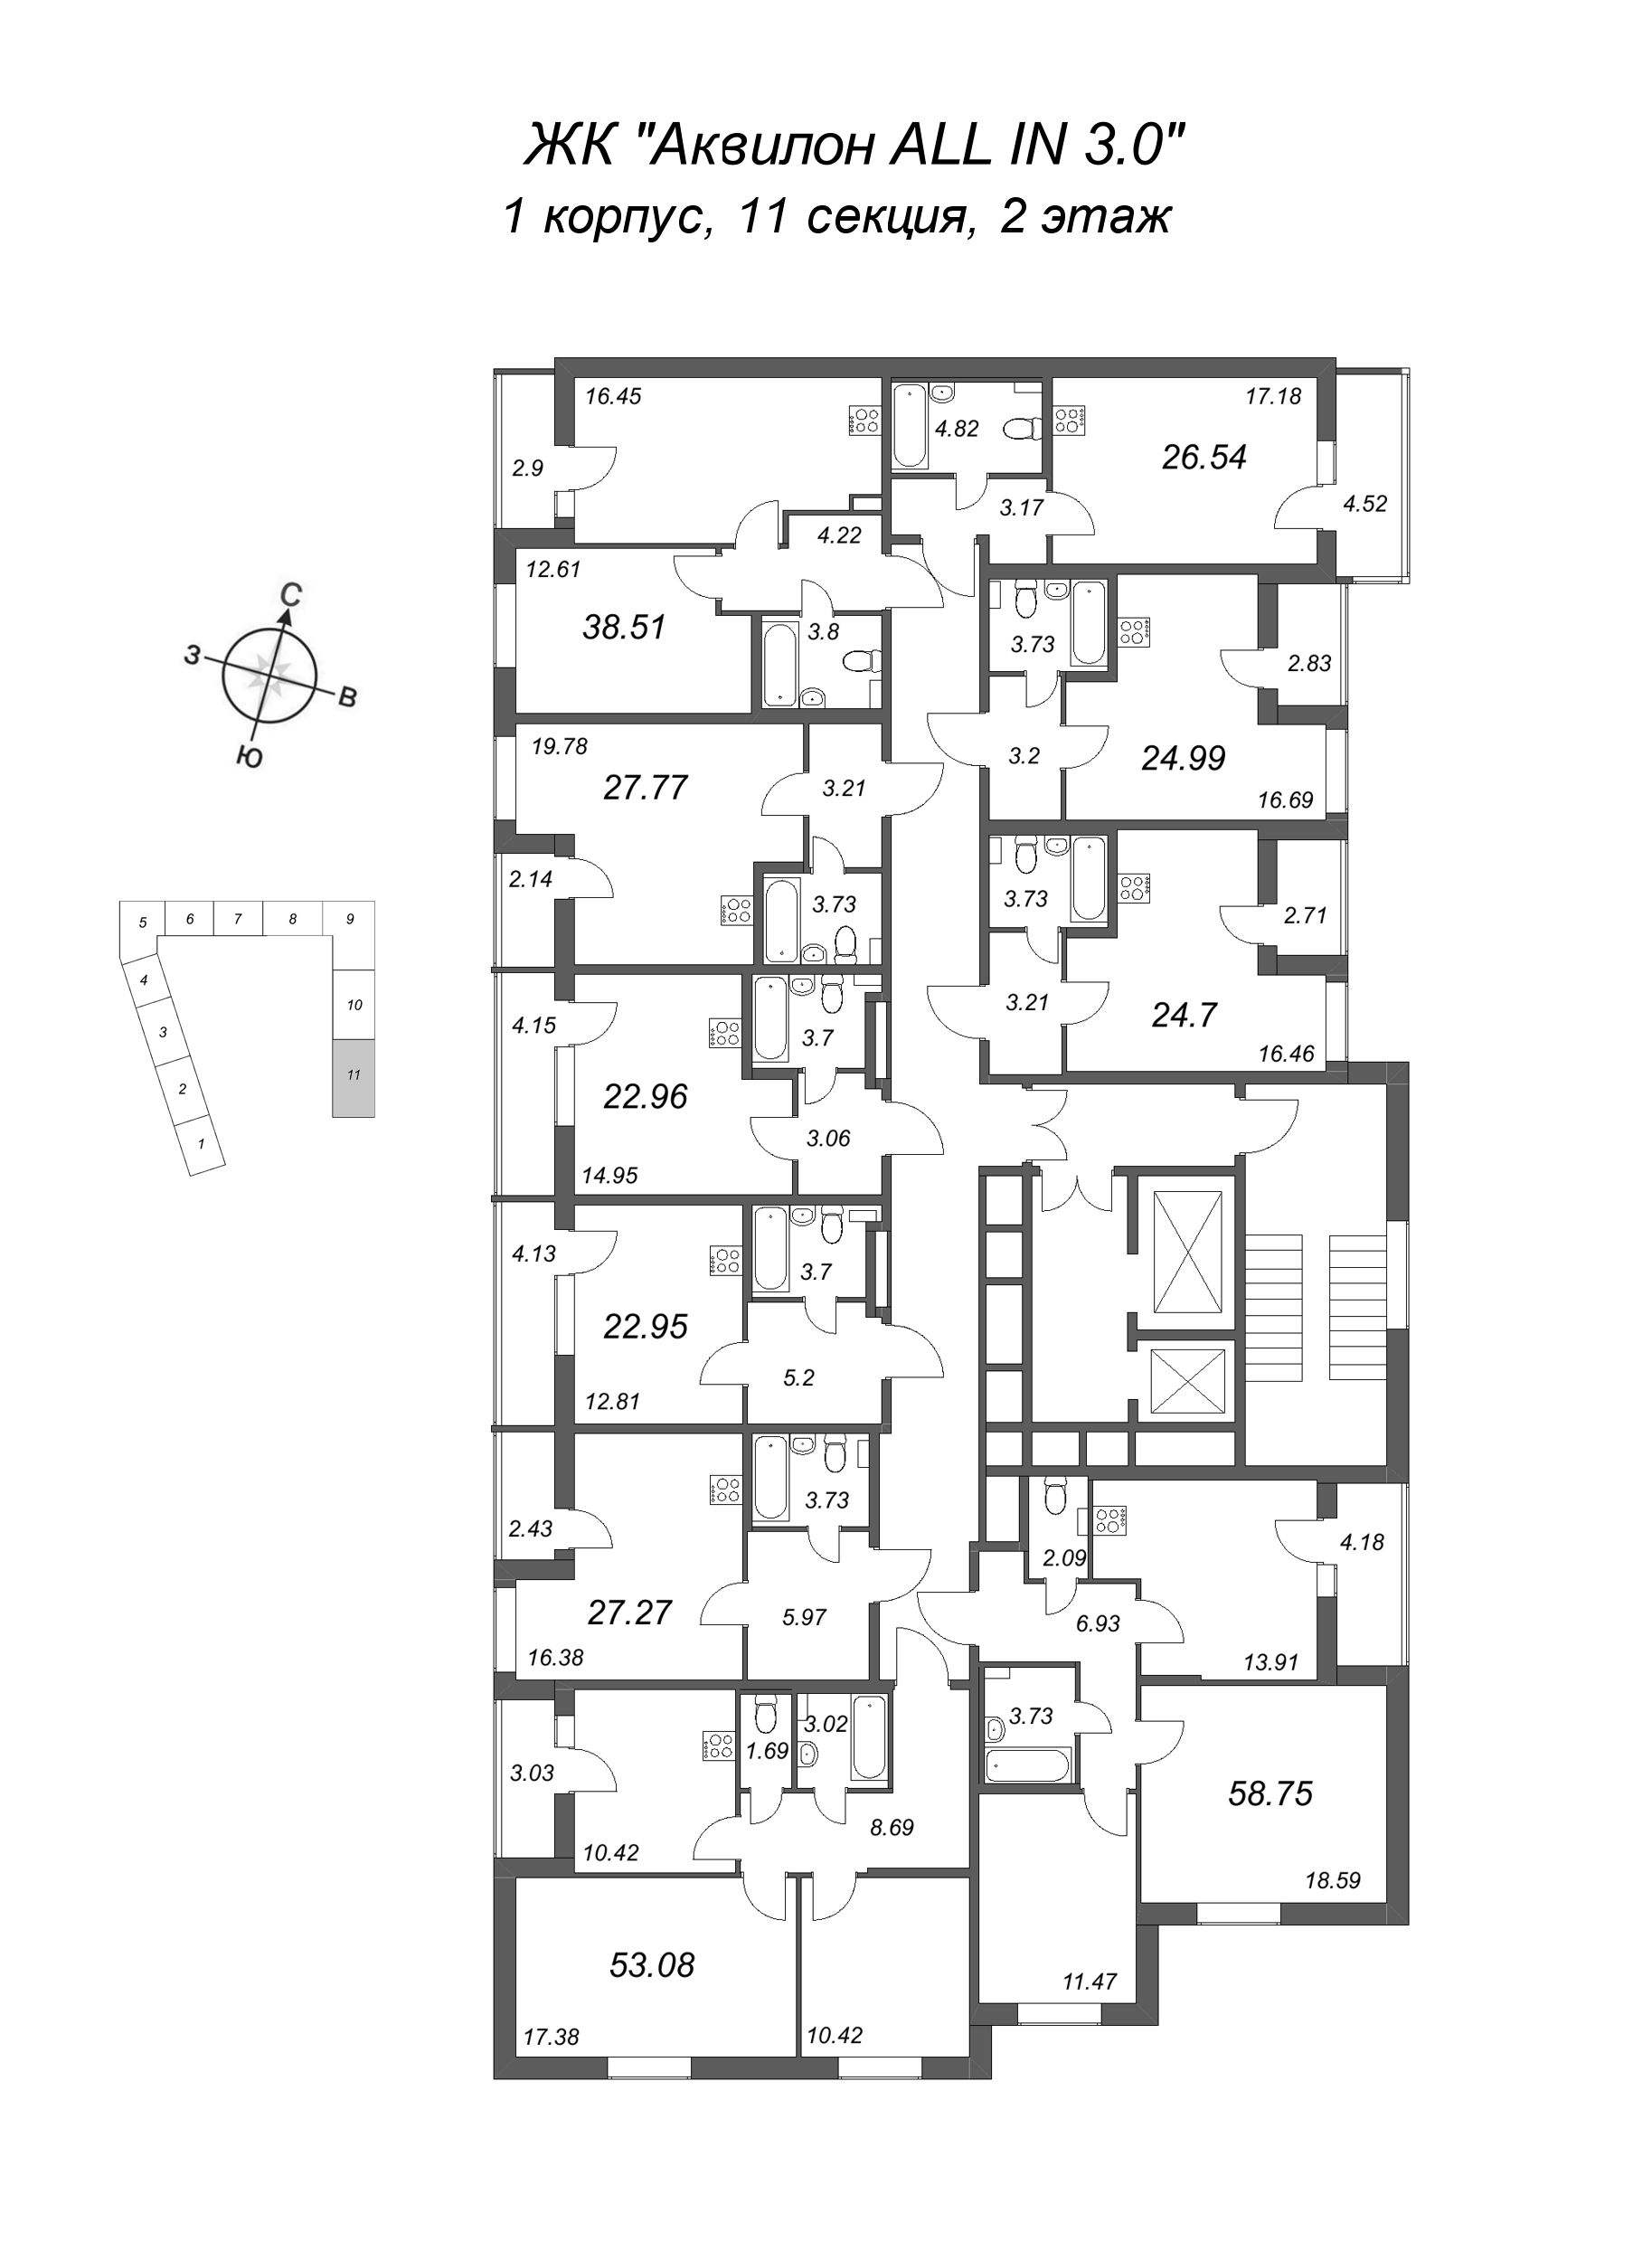 2-комнатная квартира, 53.08 м² в ЖК "Аквилон All in 3.0" - планировка этажа